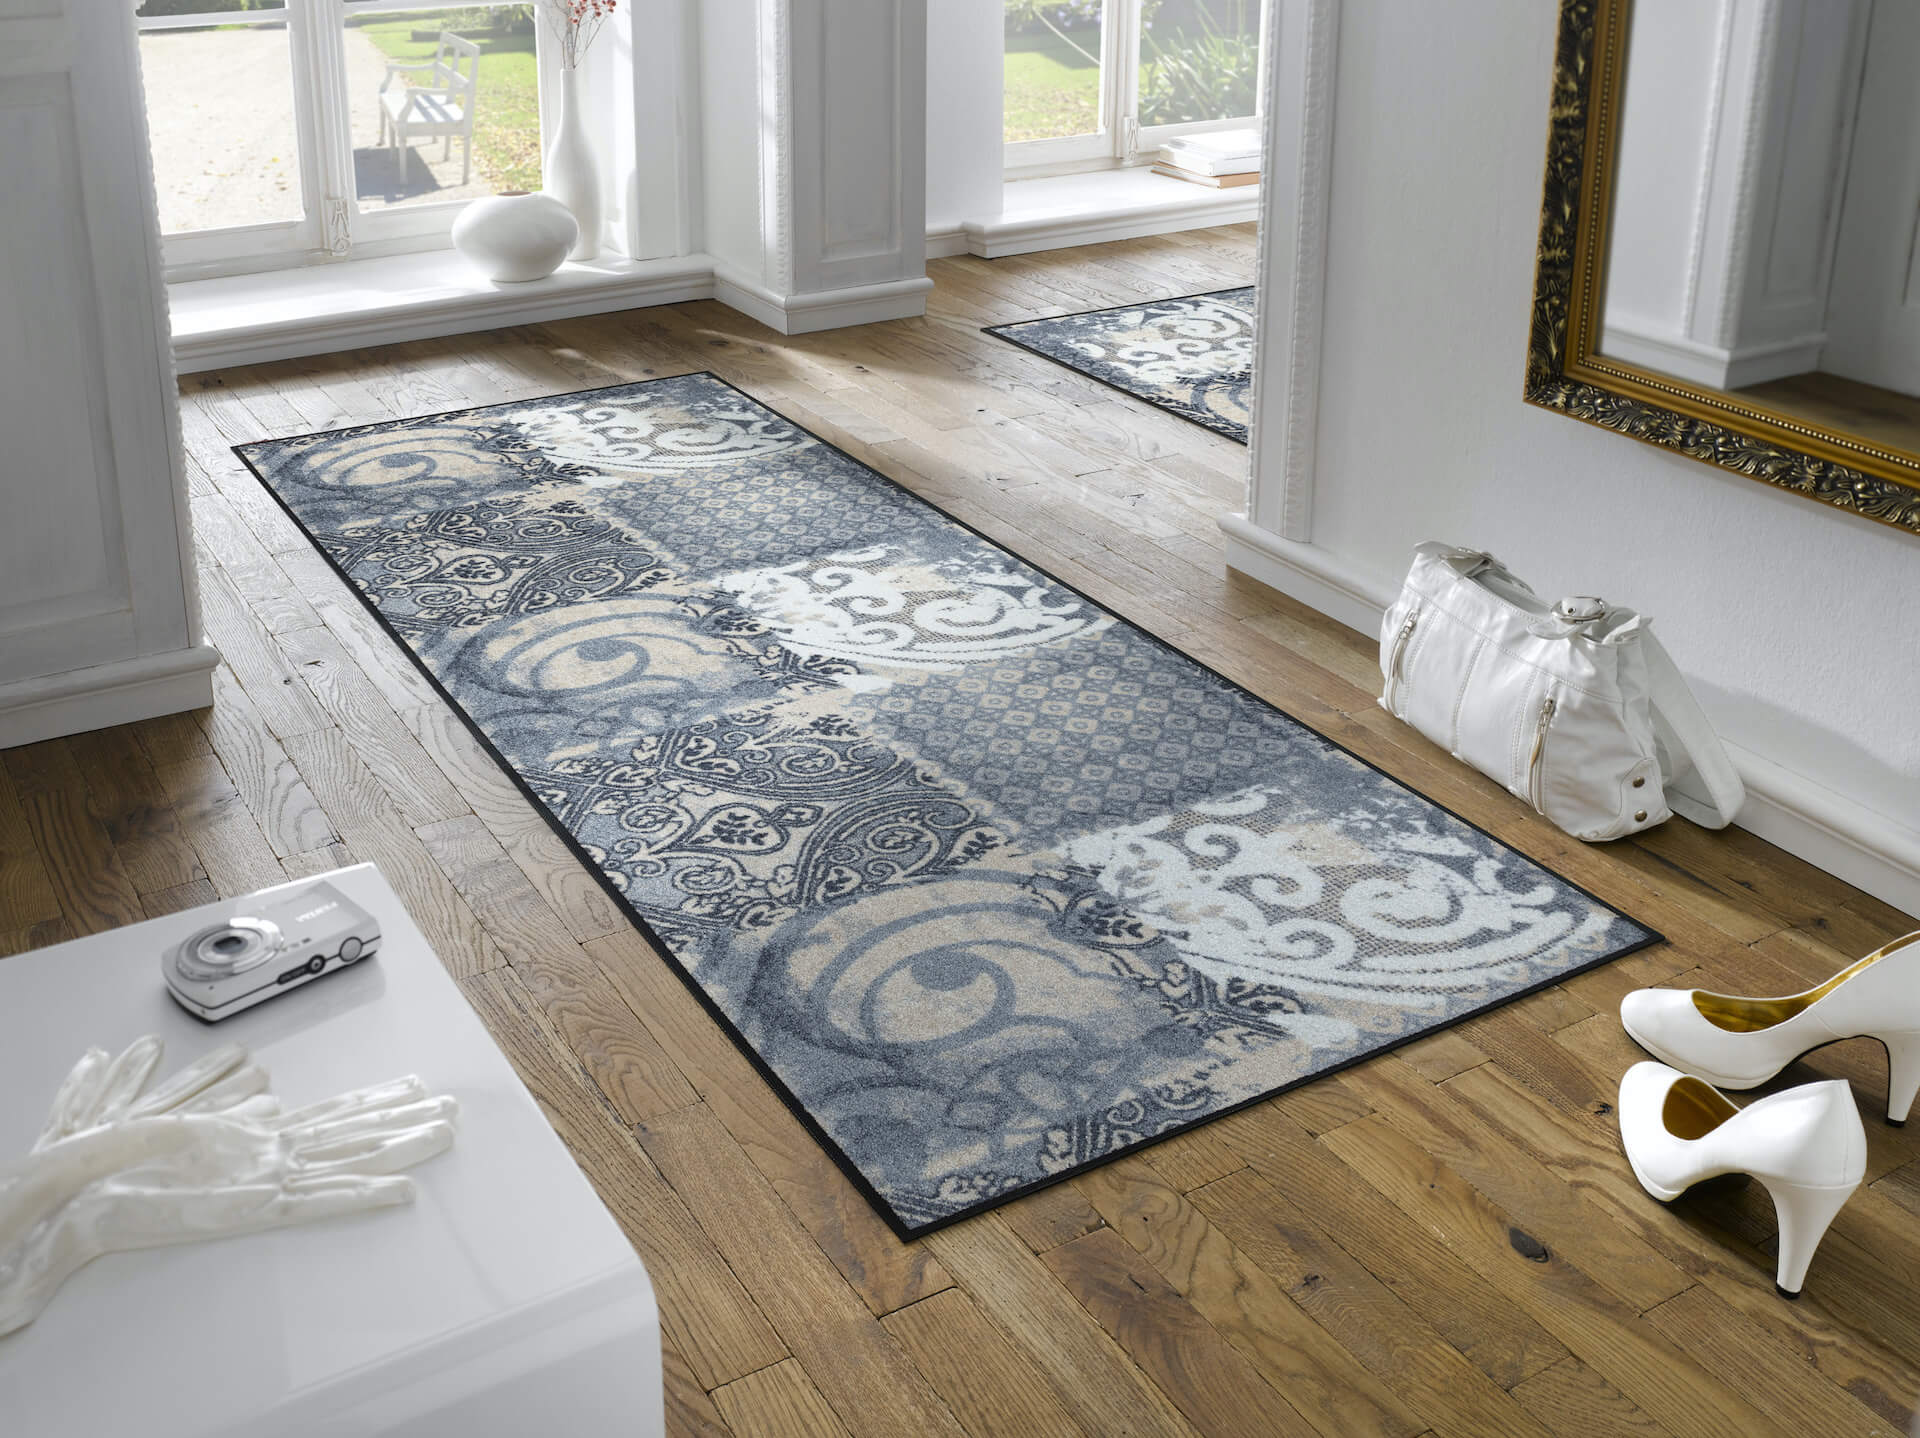 Fußmatte Arabesque, Wash & Dry Interior Design, grau/weiß, 75 x 190 cm, Interieurbild